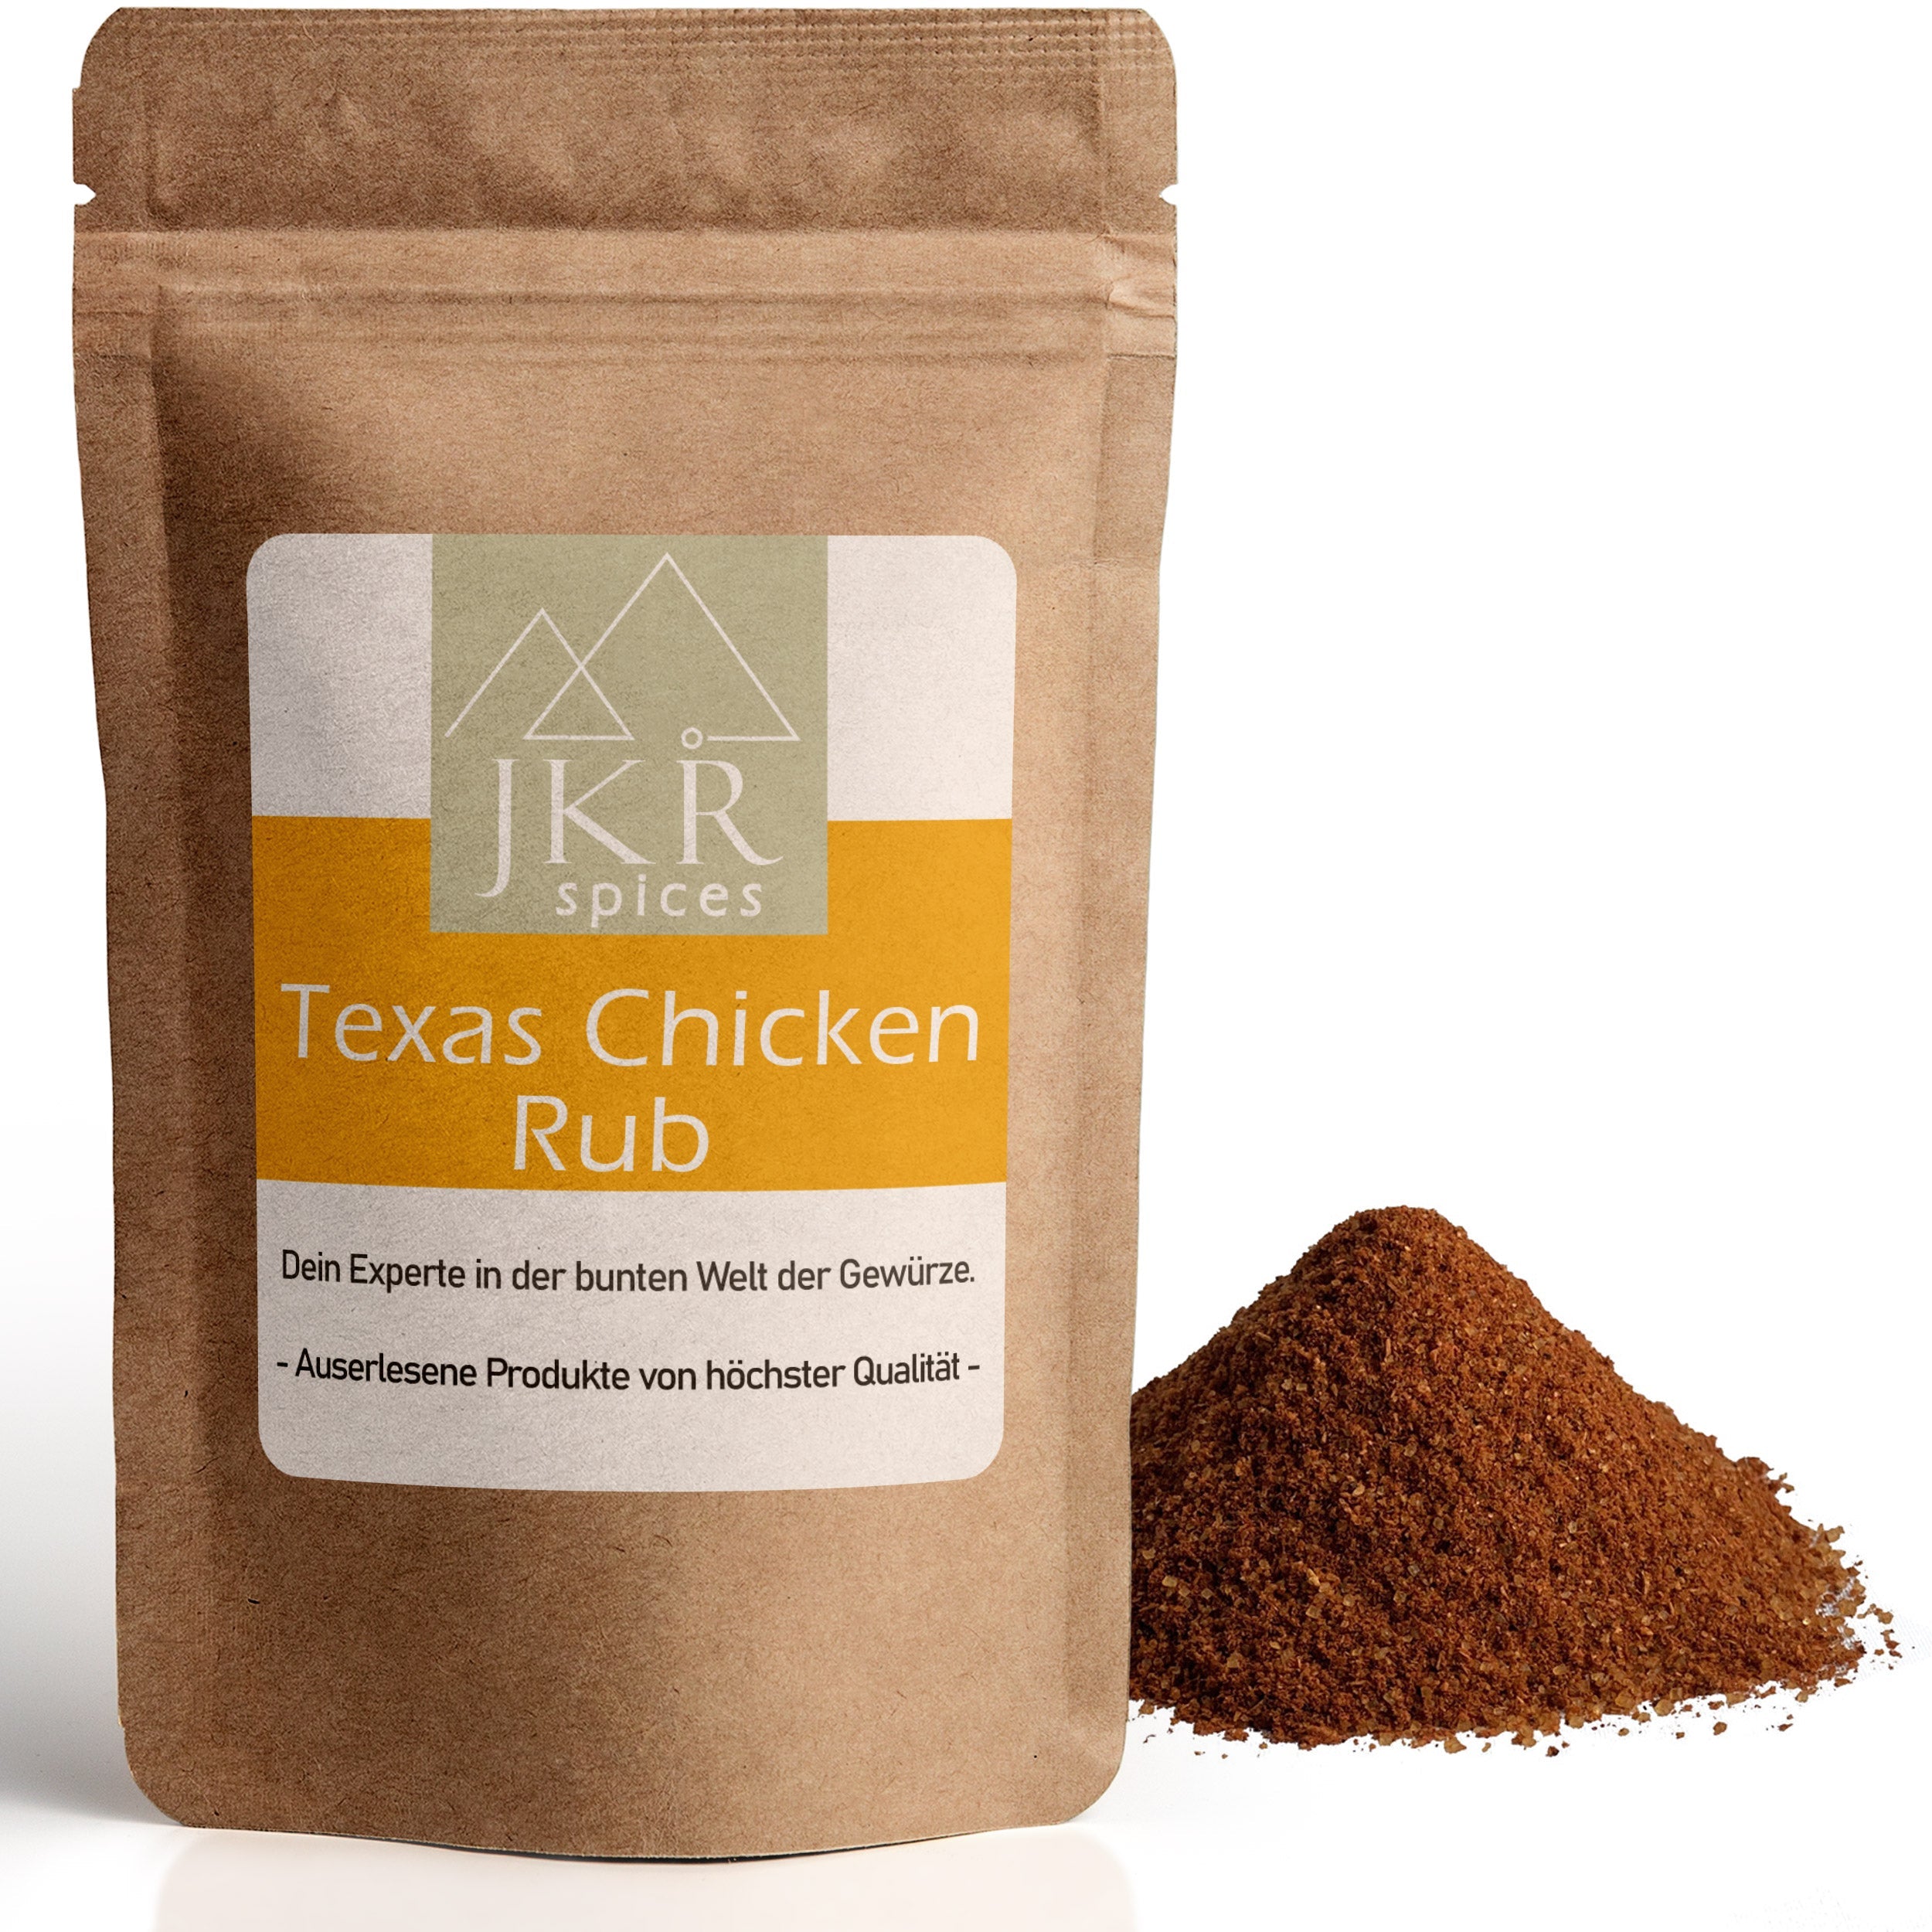 Texas Chicken Rub